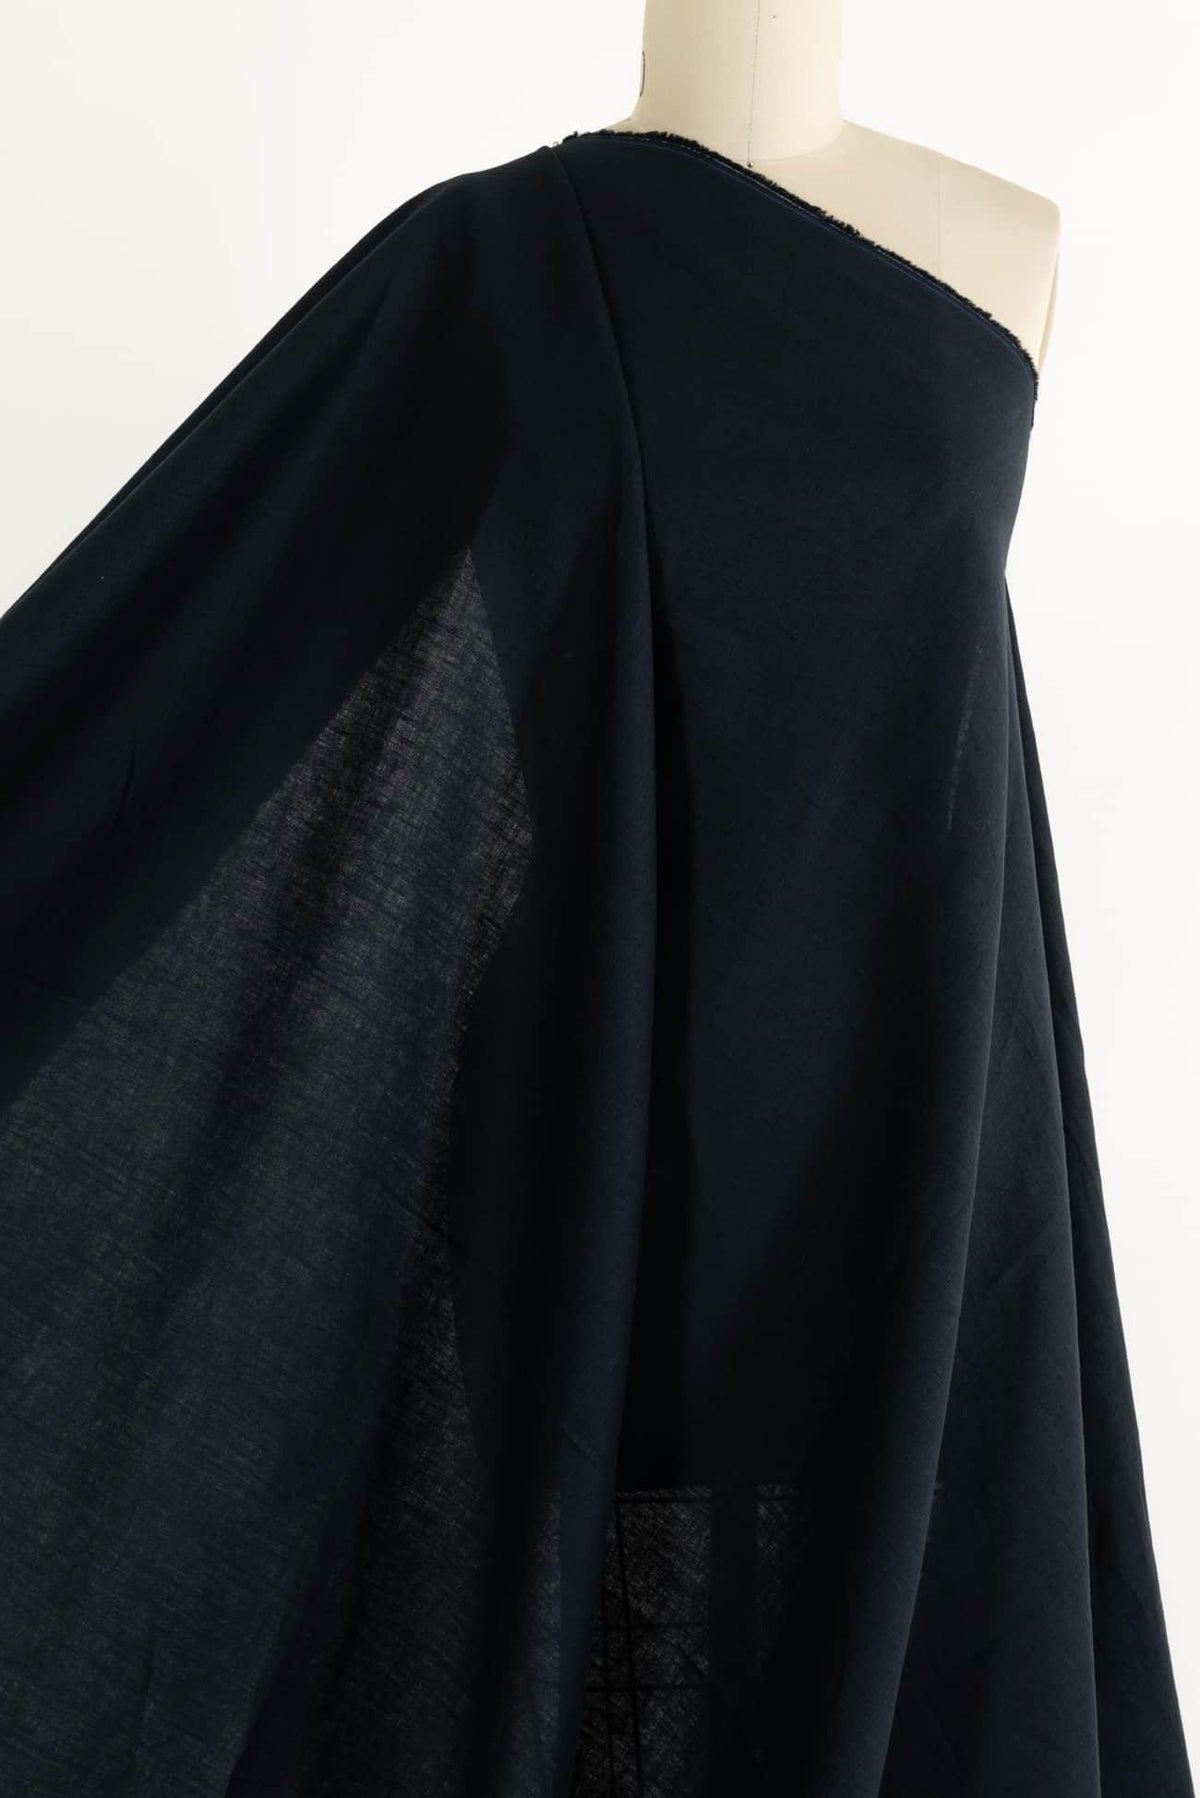 Almost Midnight Linen Woven - Marcy Tilton Fabrics